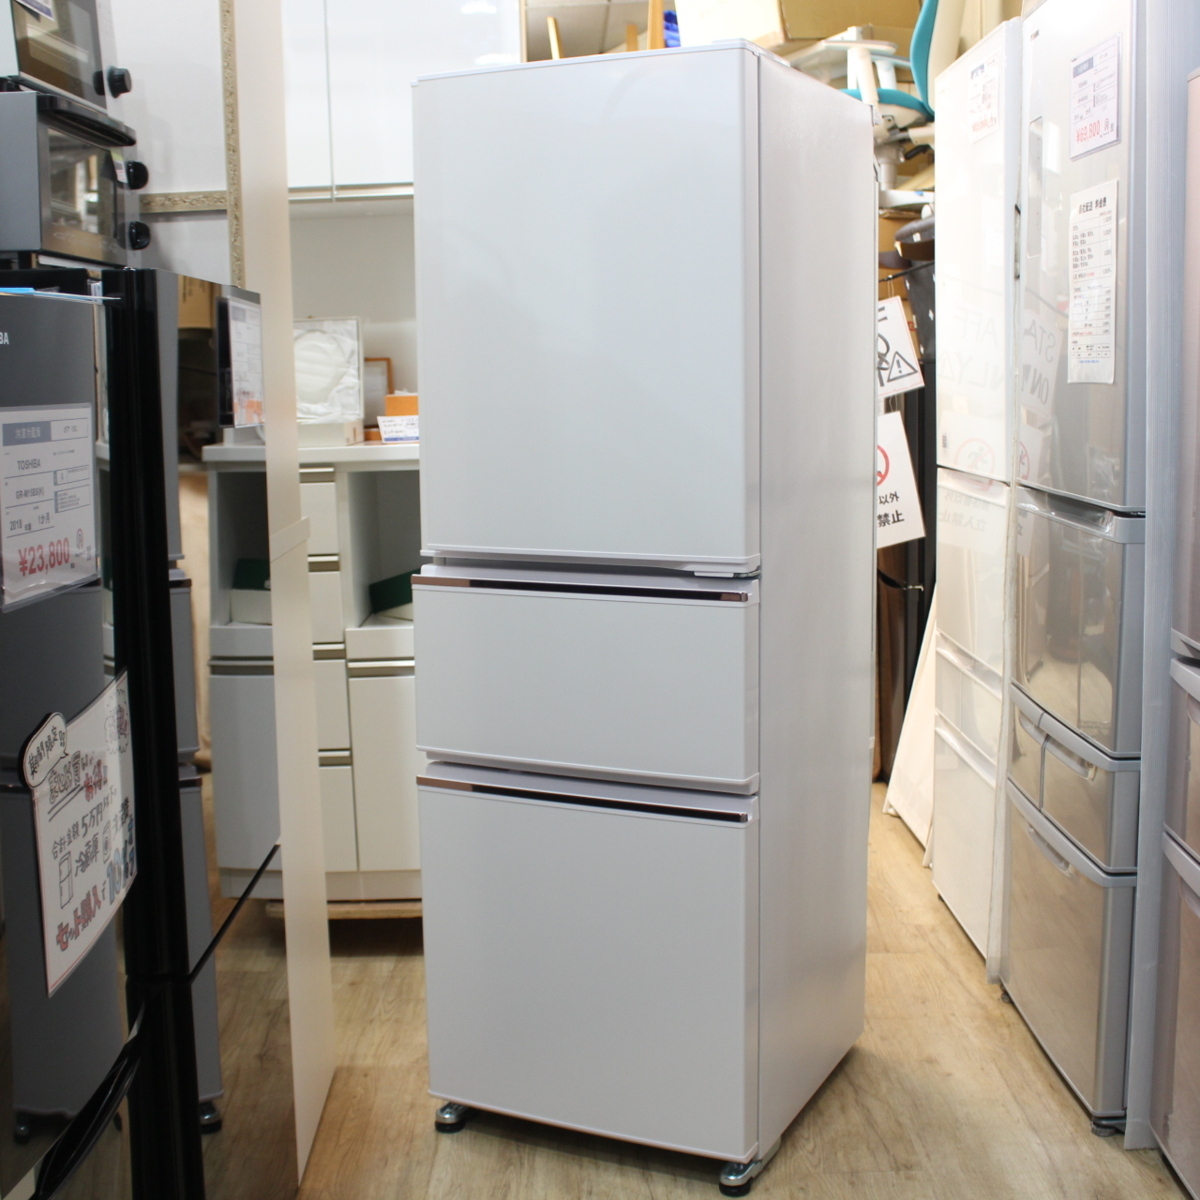 三菱 3ドア冷蔵庫 MR-CX27C - 川崎市・横浜市で家具・家電の買取